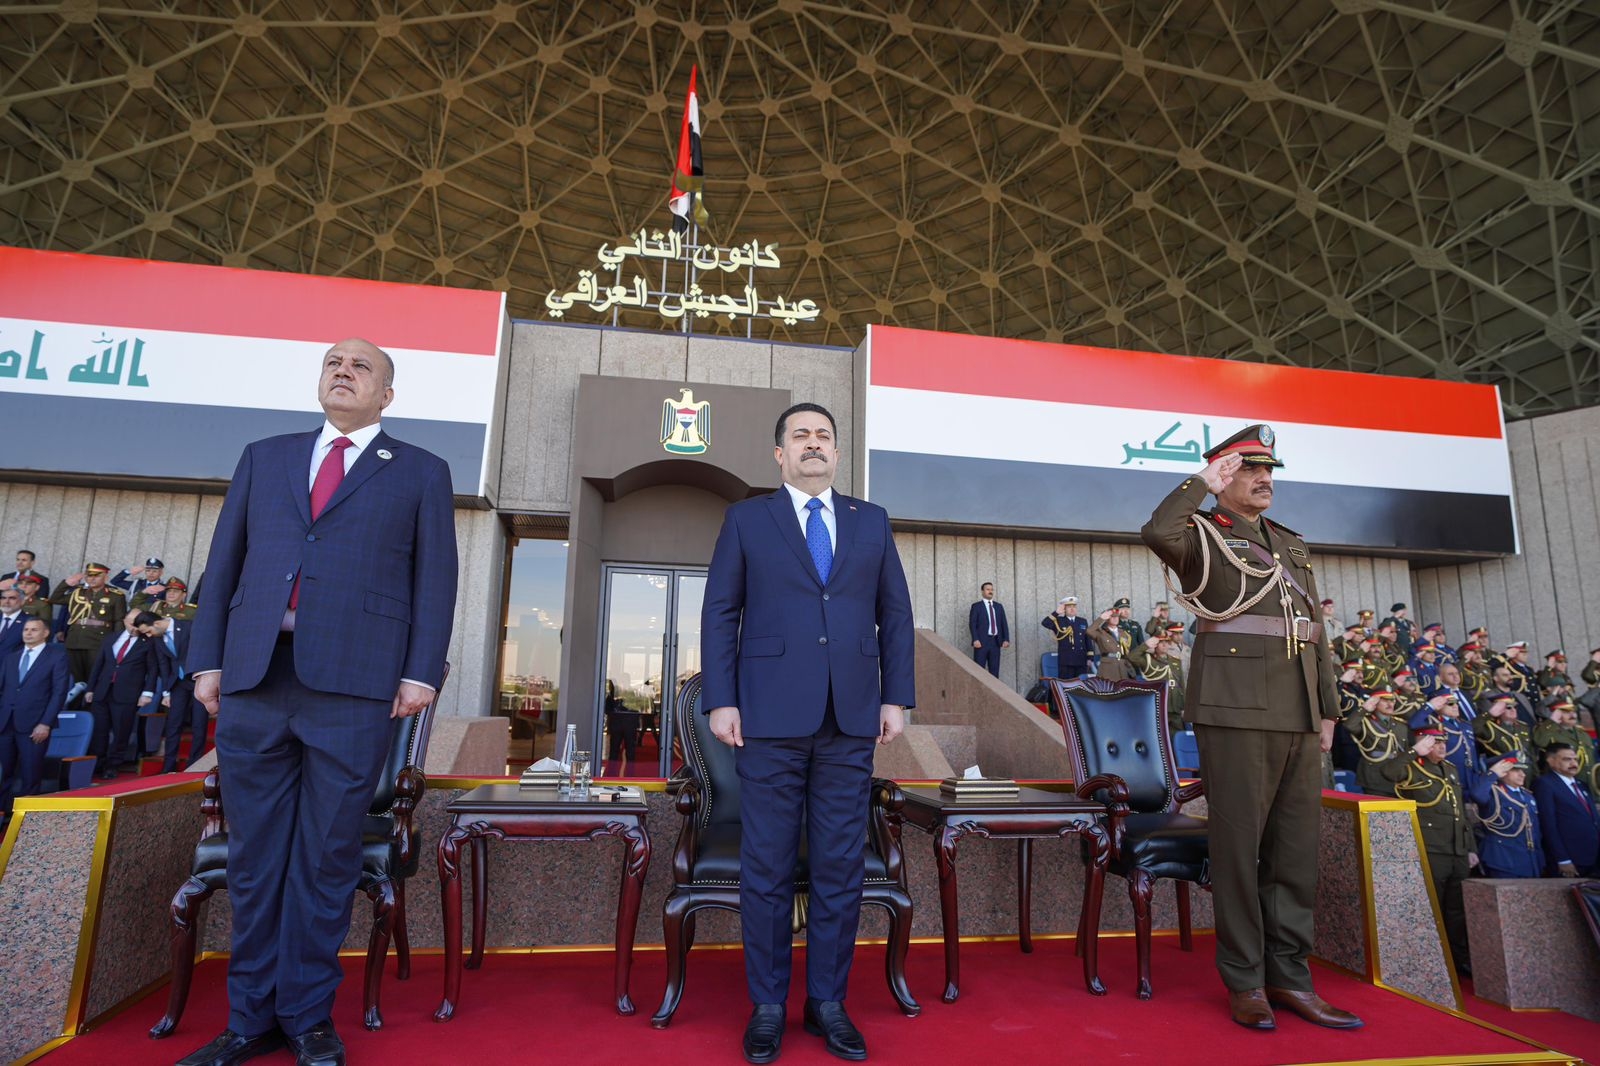 صور.. القائد العام يحضر الاستعراض العسكري في الذكرى الـ 103 لتأسيس الجيش العراقي